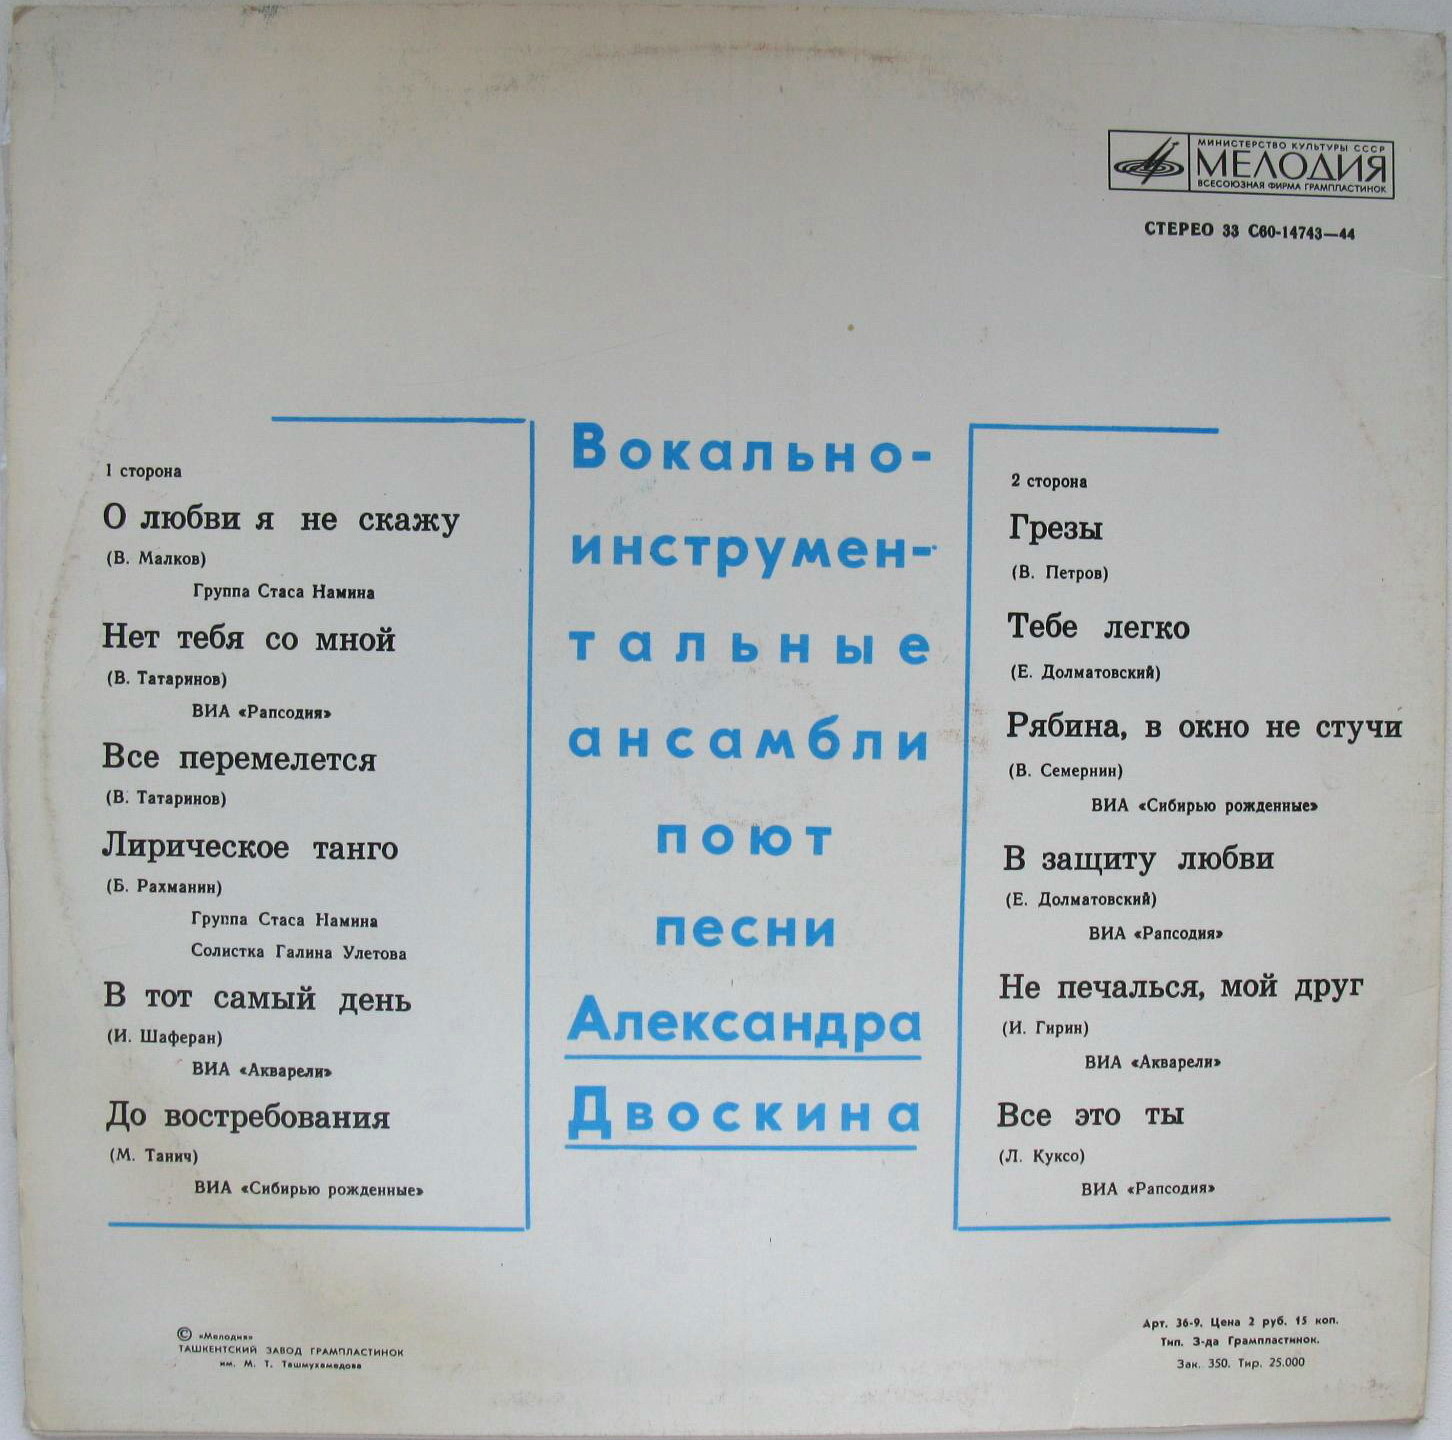 Вокально-инструментальные ансамбли поют песни Александра Двоскина